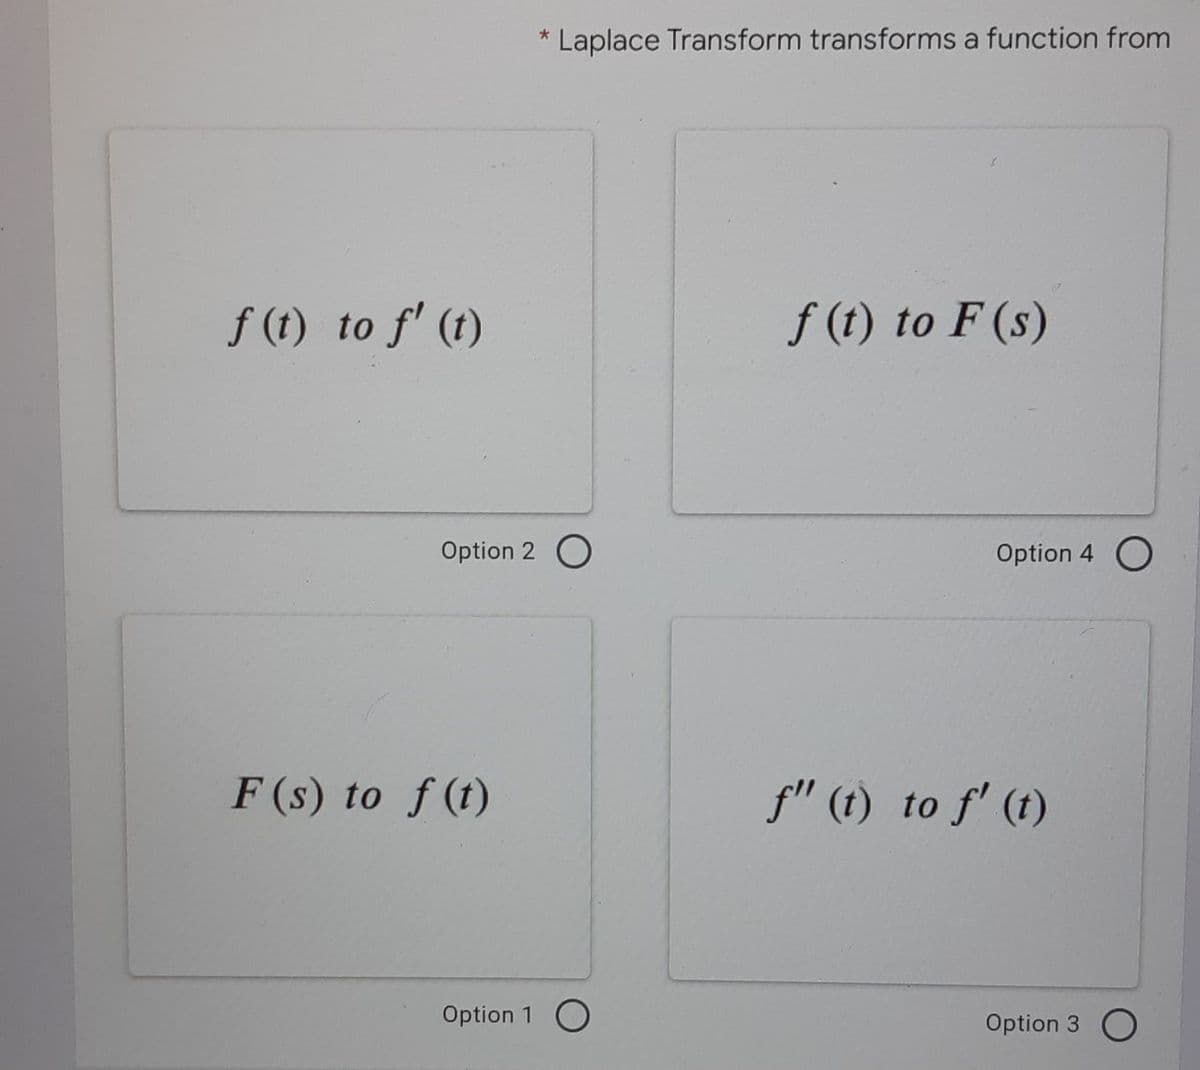 f (t) to f' (t)
Option 2
F (s) to f(t)
*
Laplace Transform transforms a function from
f (t) to F (s)
Option 1 O
Option 4 O
f" (t) to f' (t)
Option 3 O